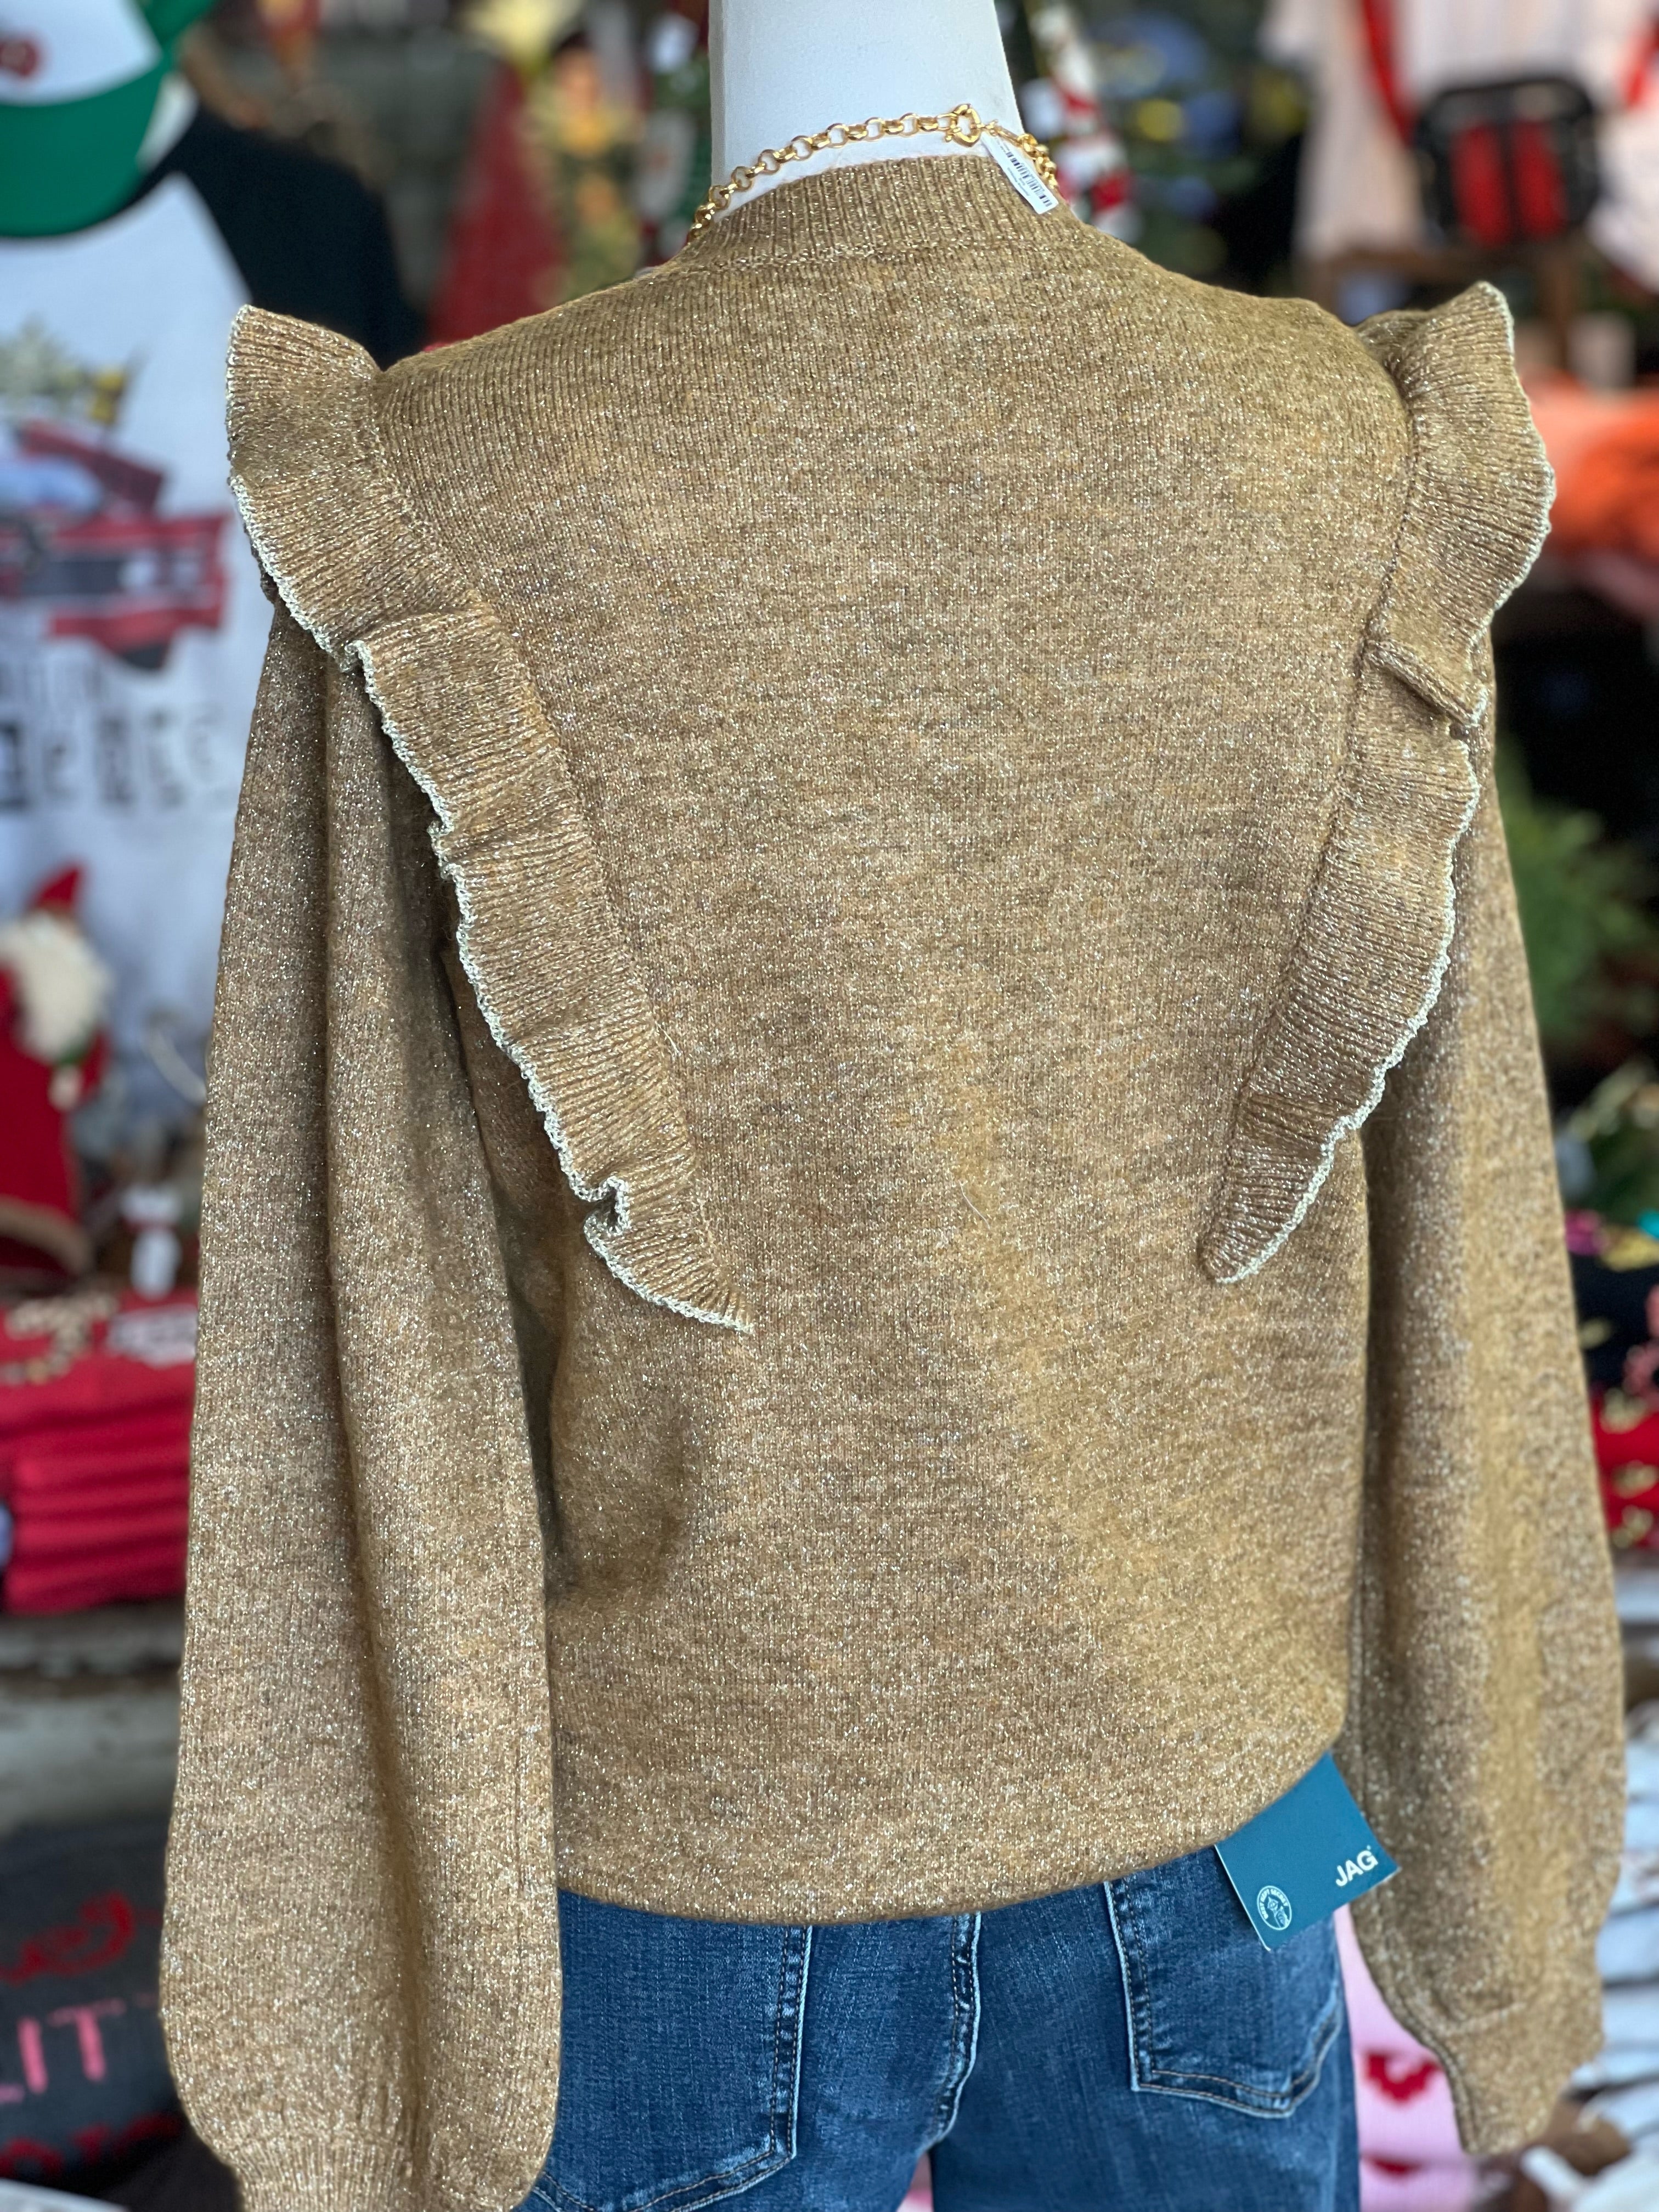 Rufflemiester Sweater